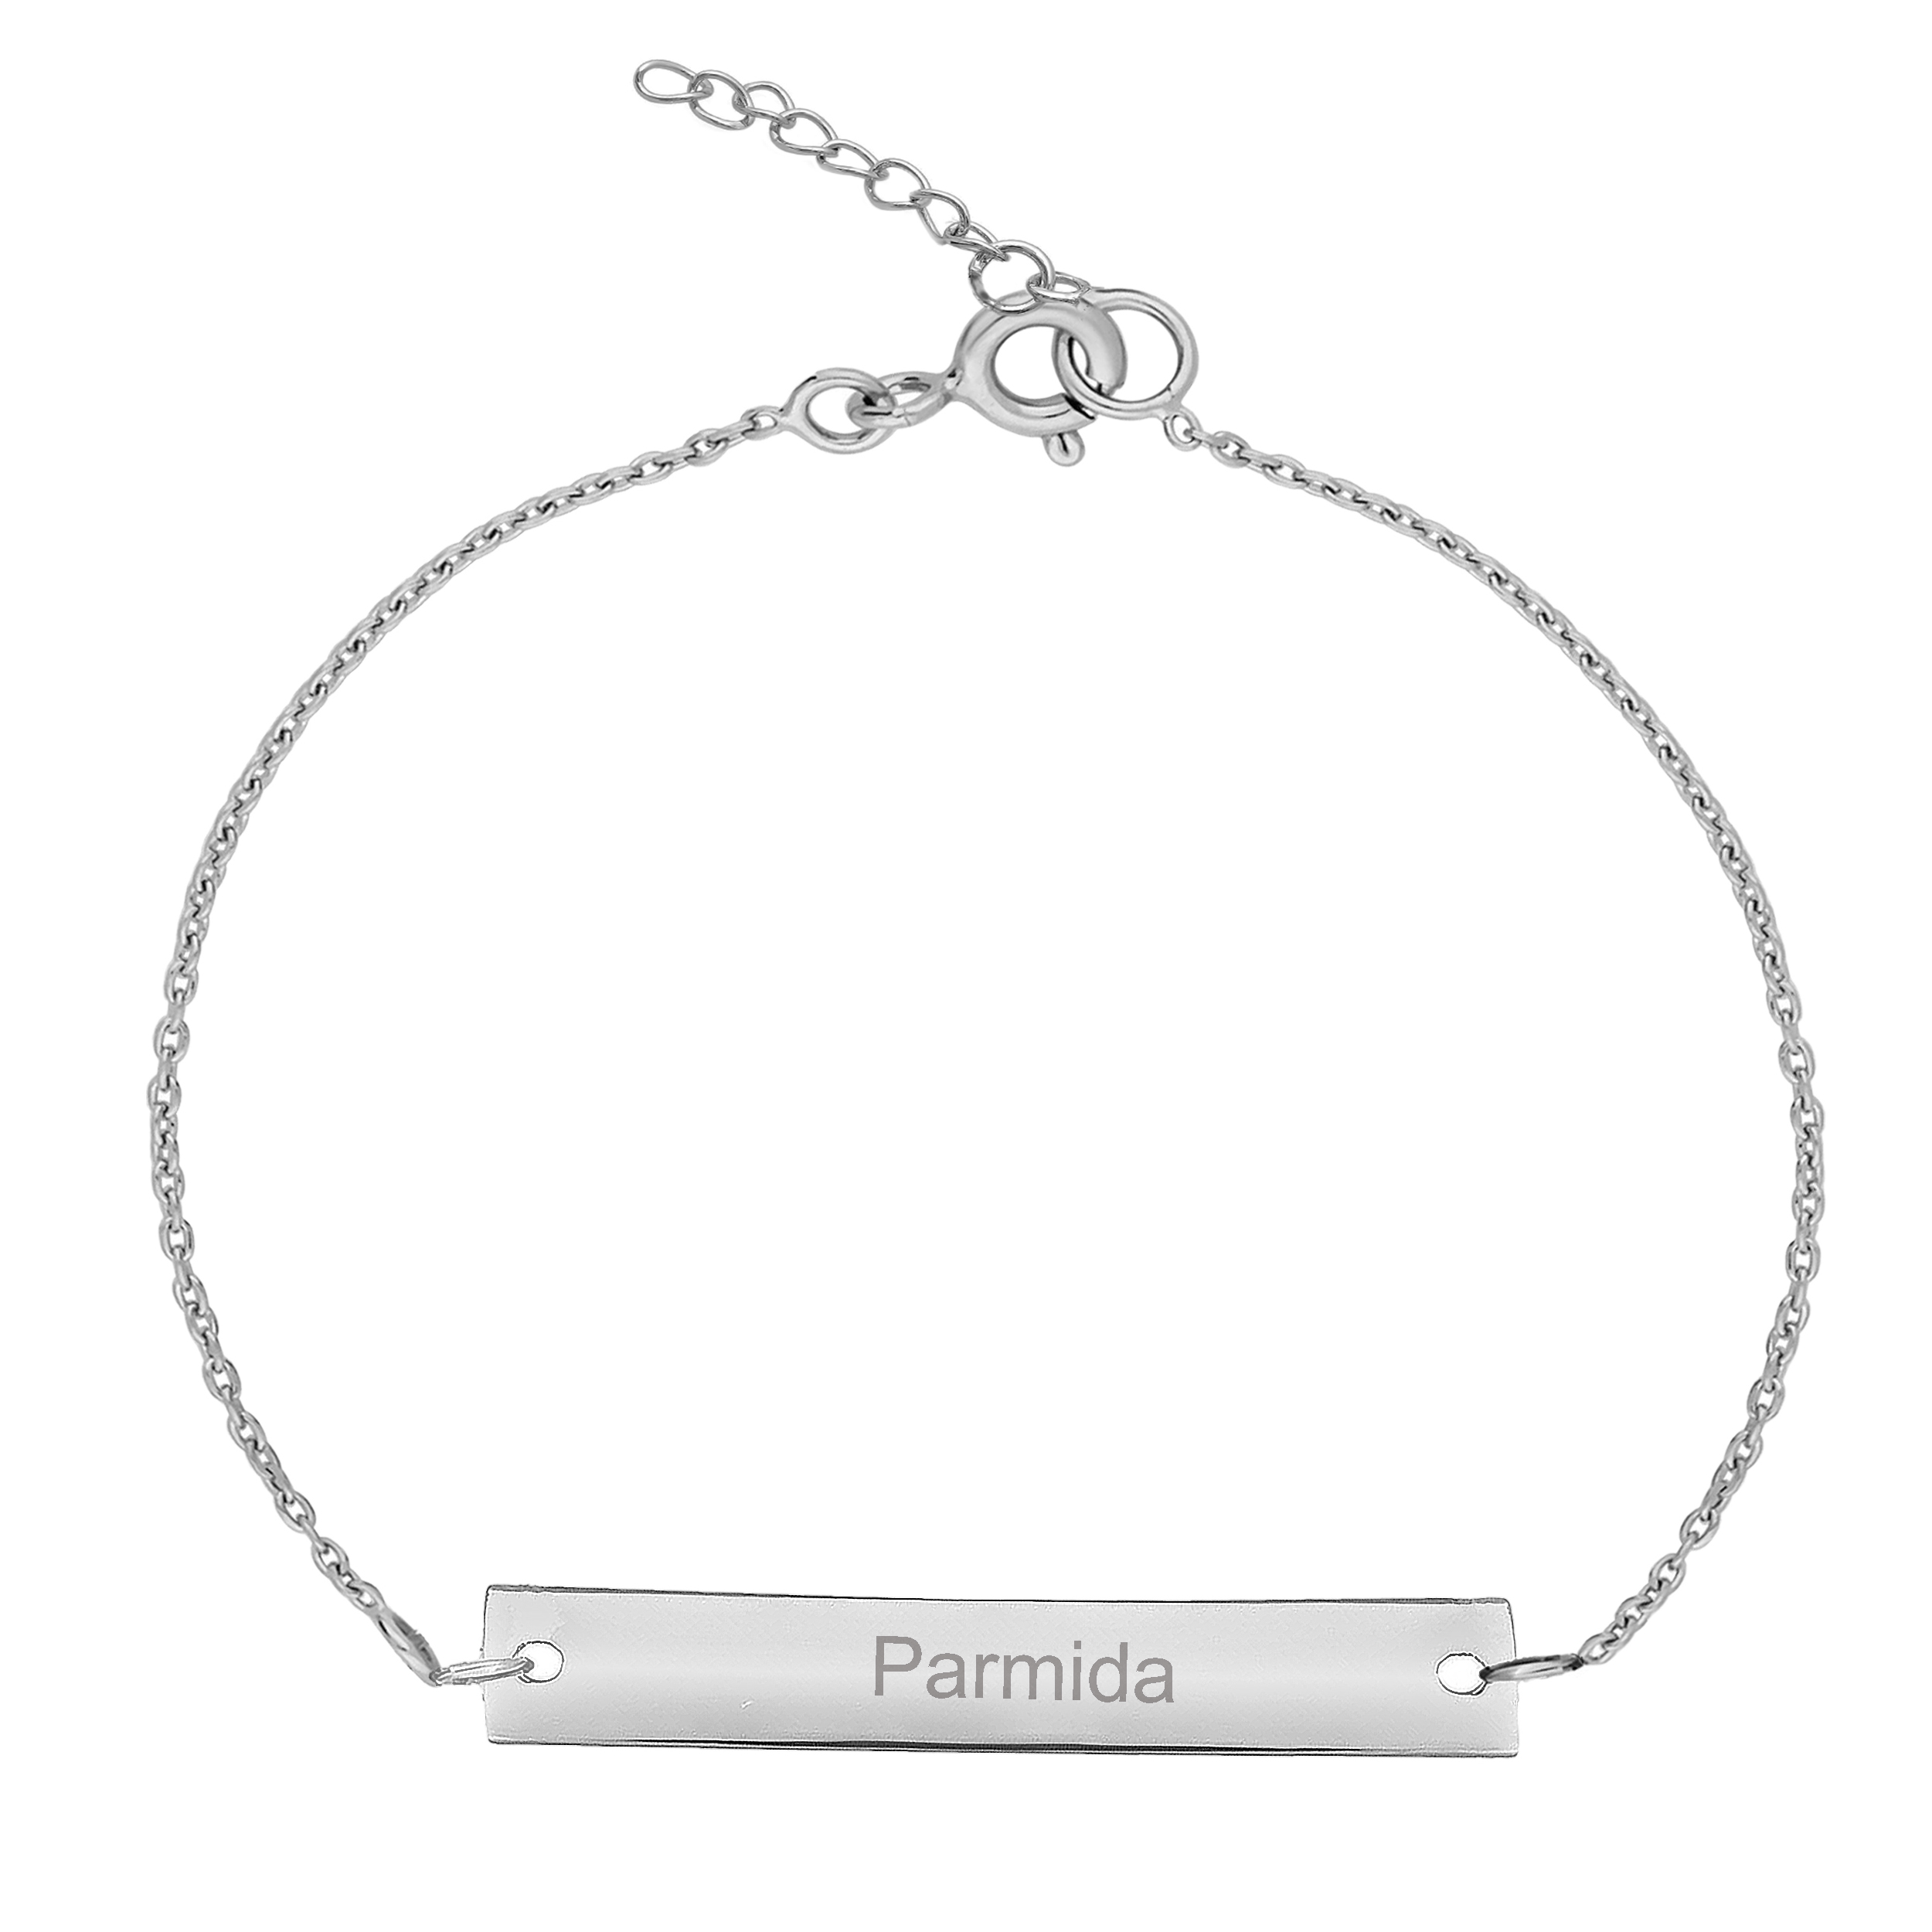 دستبند نقره زنانه ترمه ۱ مدل پارمیدا کد DN 1035